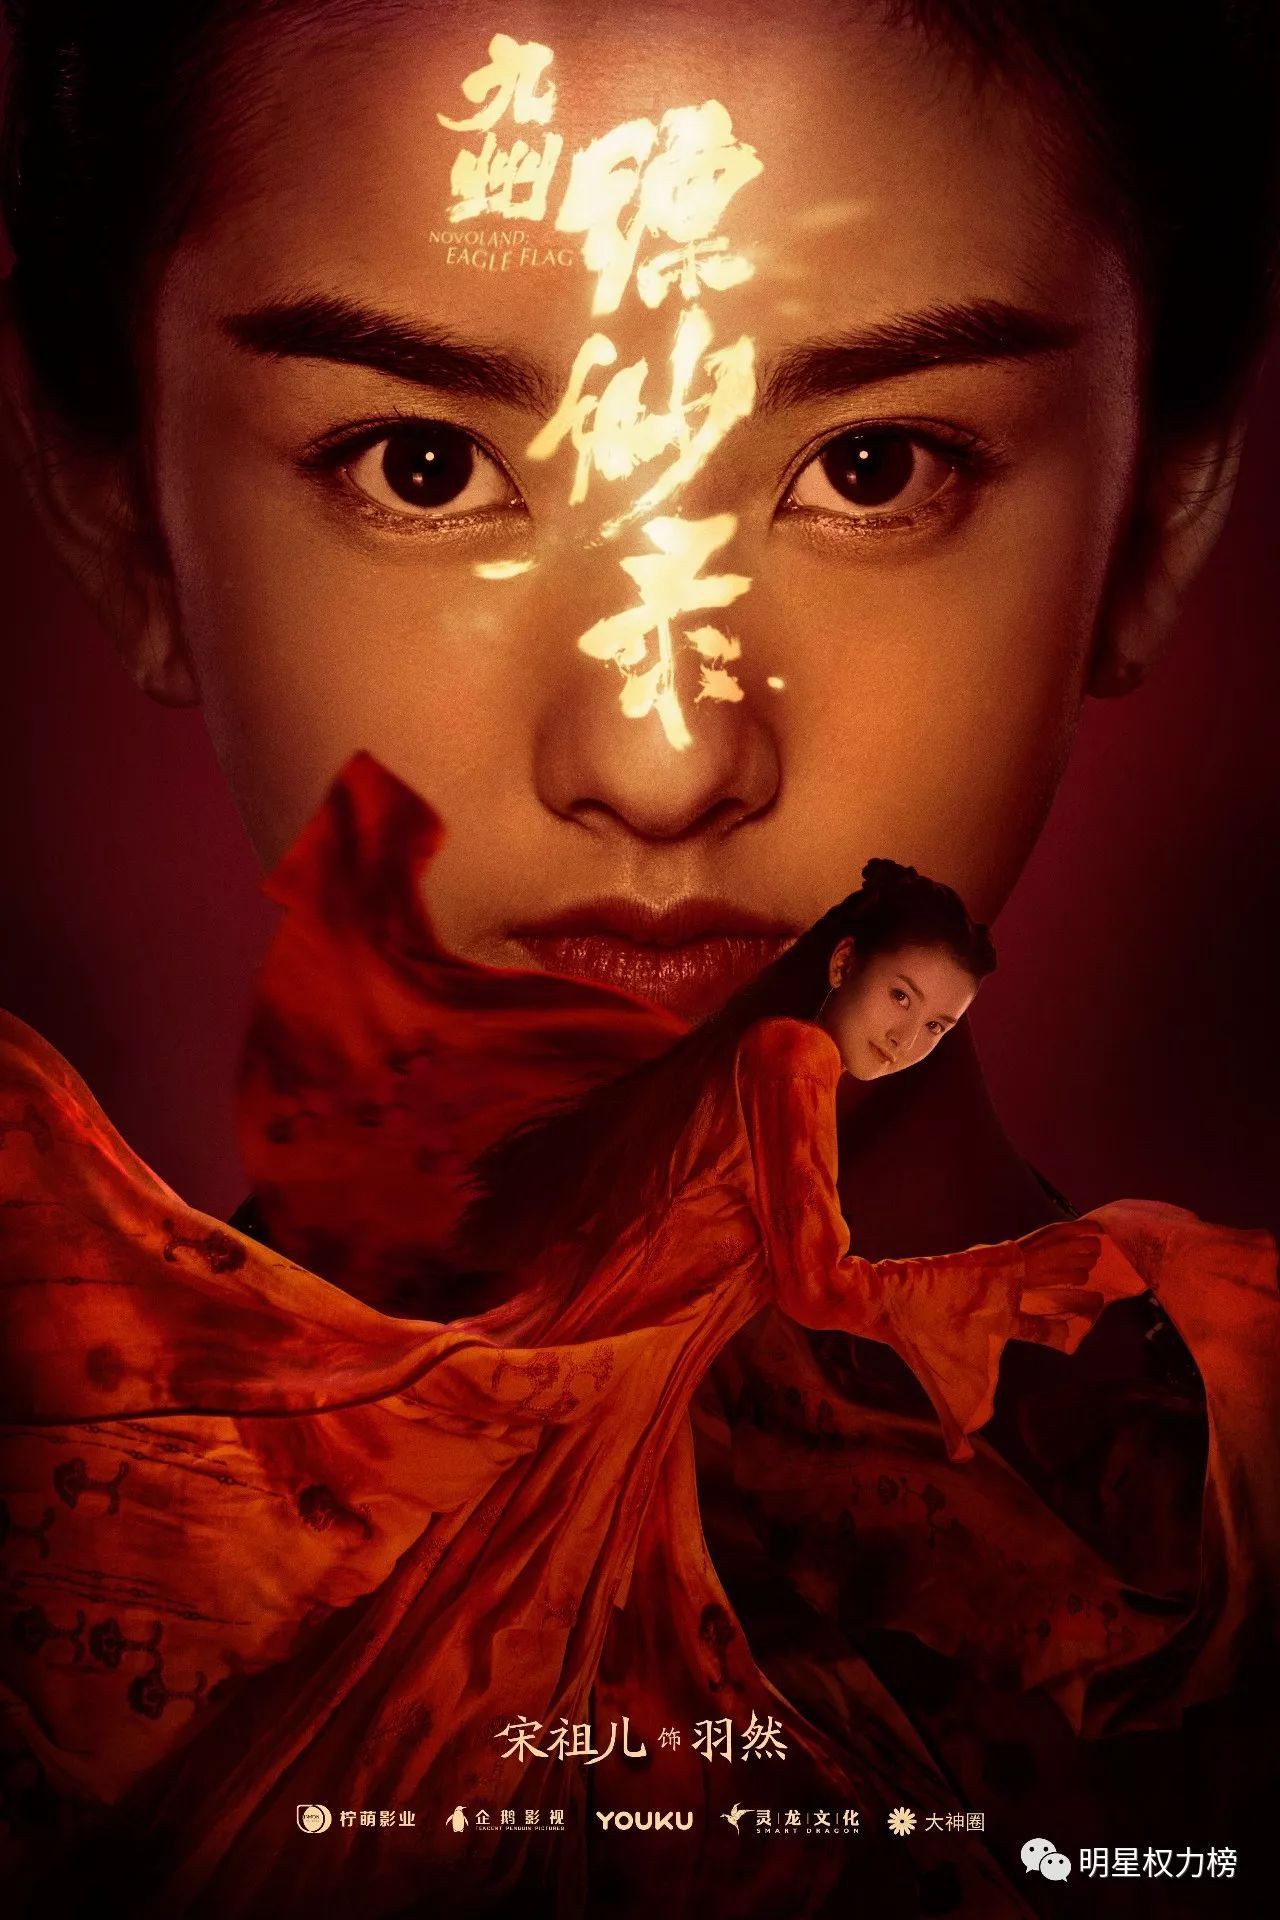 Nghỉ đóng phim mới với Dương Dương, nữ diễn viên 9x bị ném đá thậm tệ - Ảnh 2.